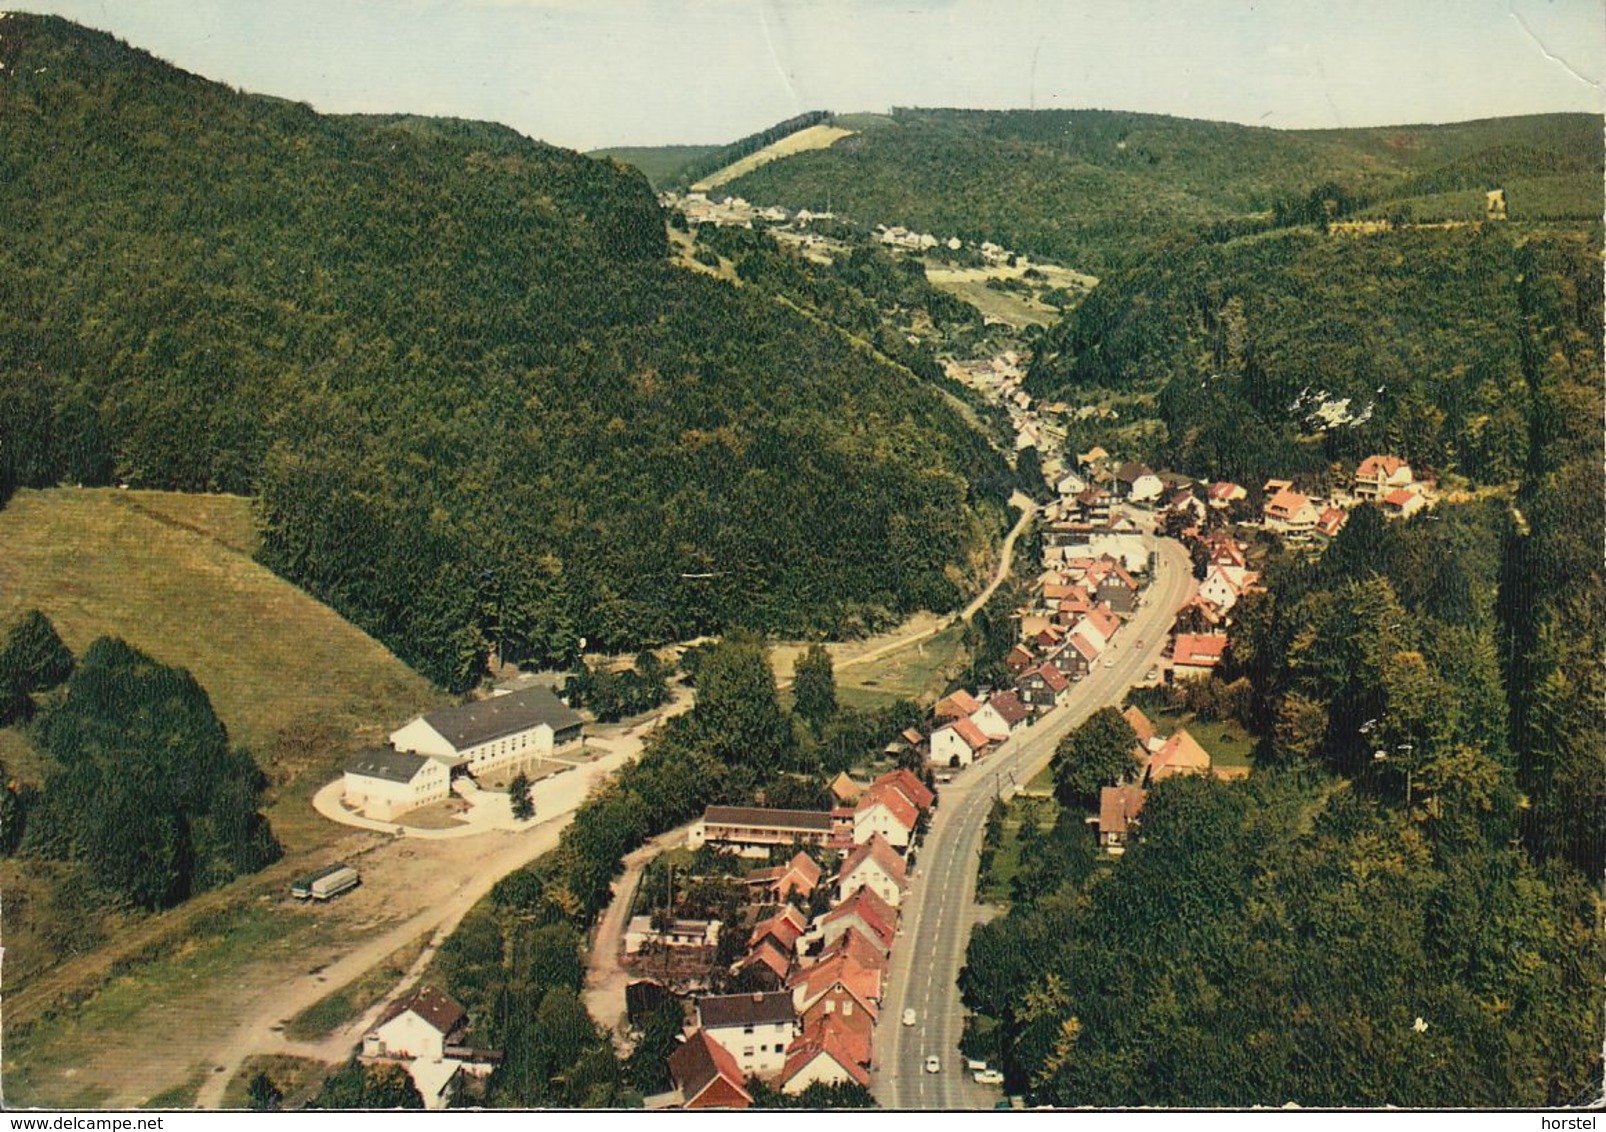 D-37447 Wieda - Südharz - Luftbild - Aerial View - Osterode